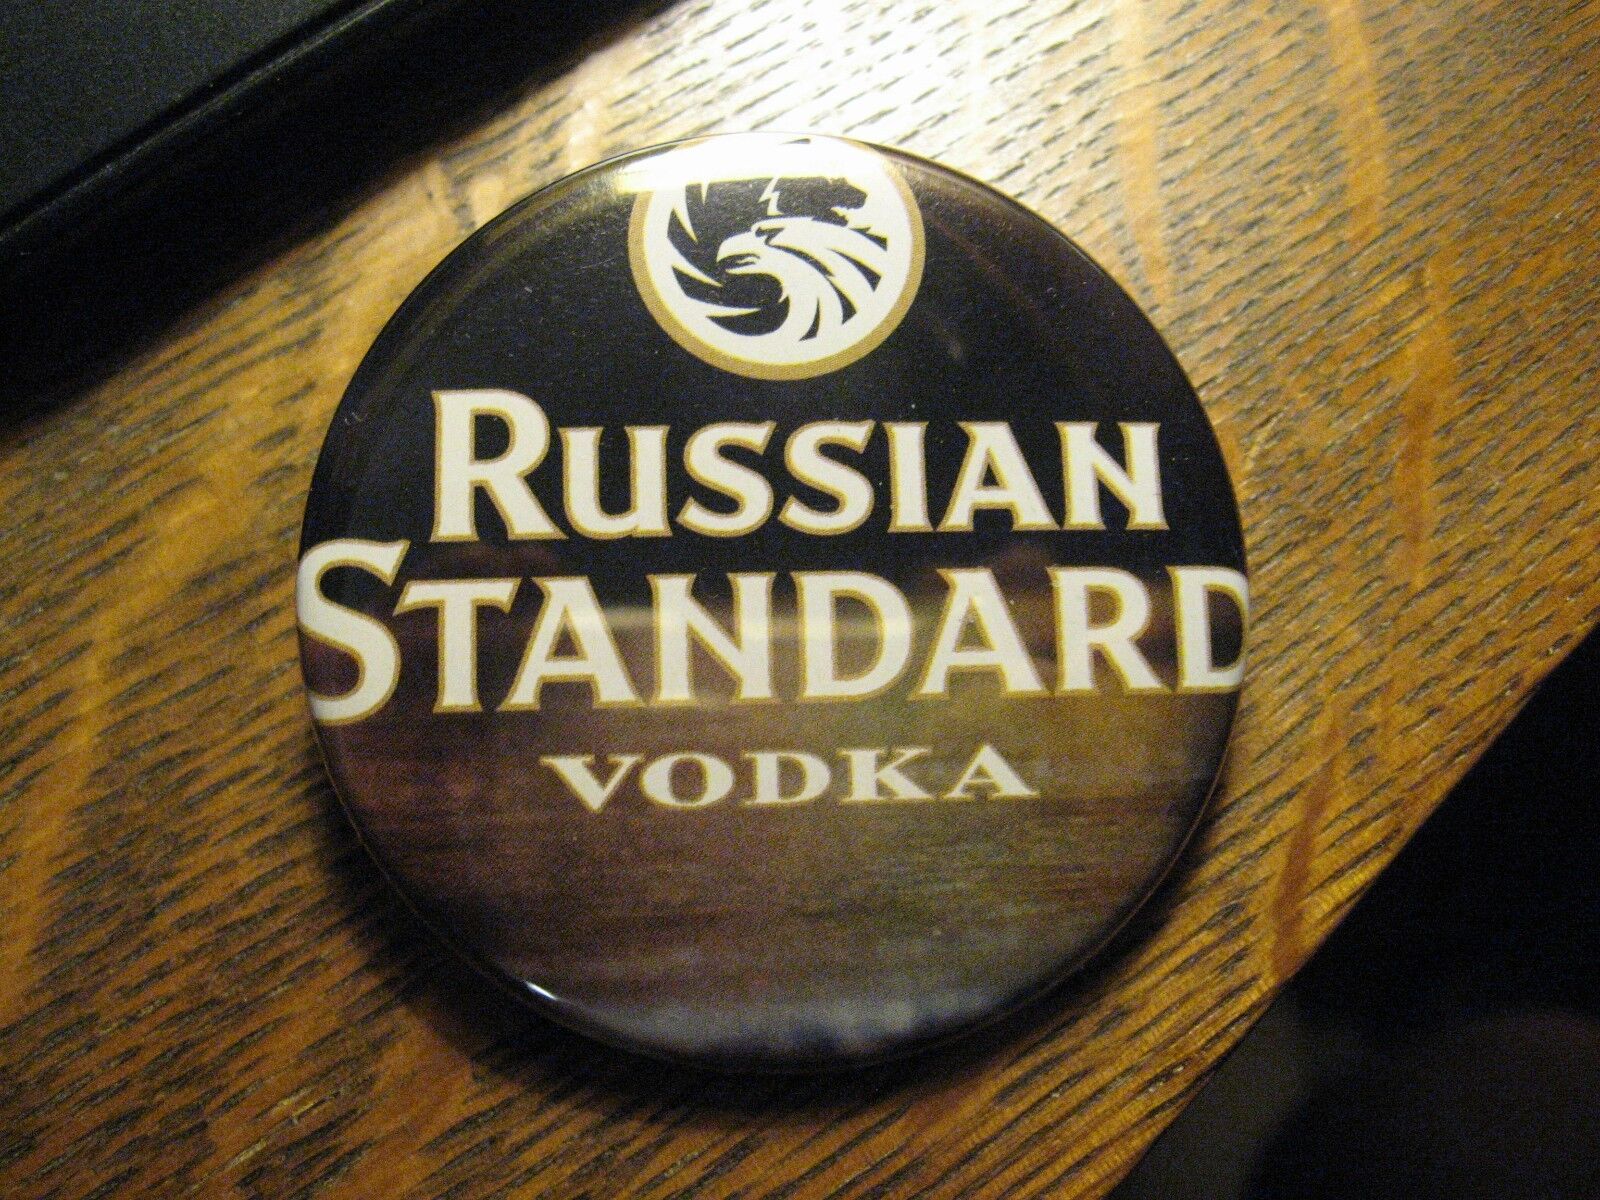 Russian Standard Vodka Premium Cocktail Martini Advertisement Lapel Button PIn